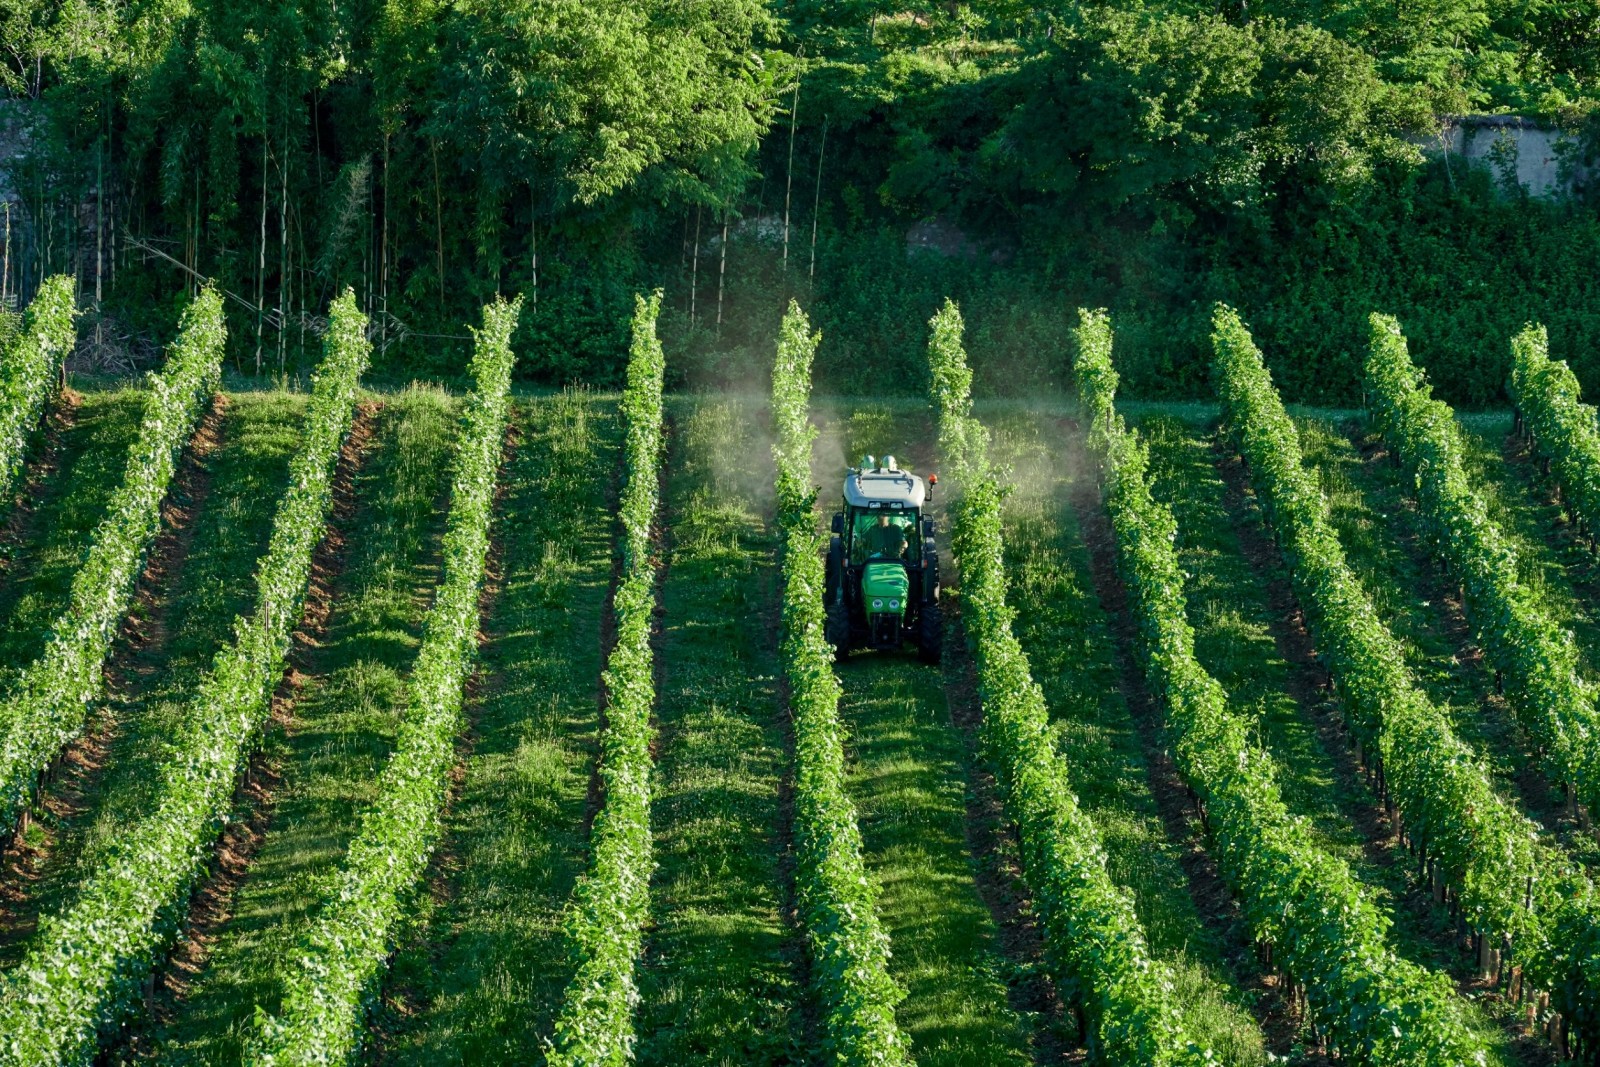 L'UE approva 5 milioni di euro per la ricerca sul Piwi - Progetti per la riproduzione di viti resistenti